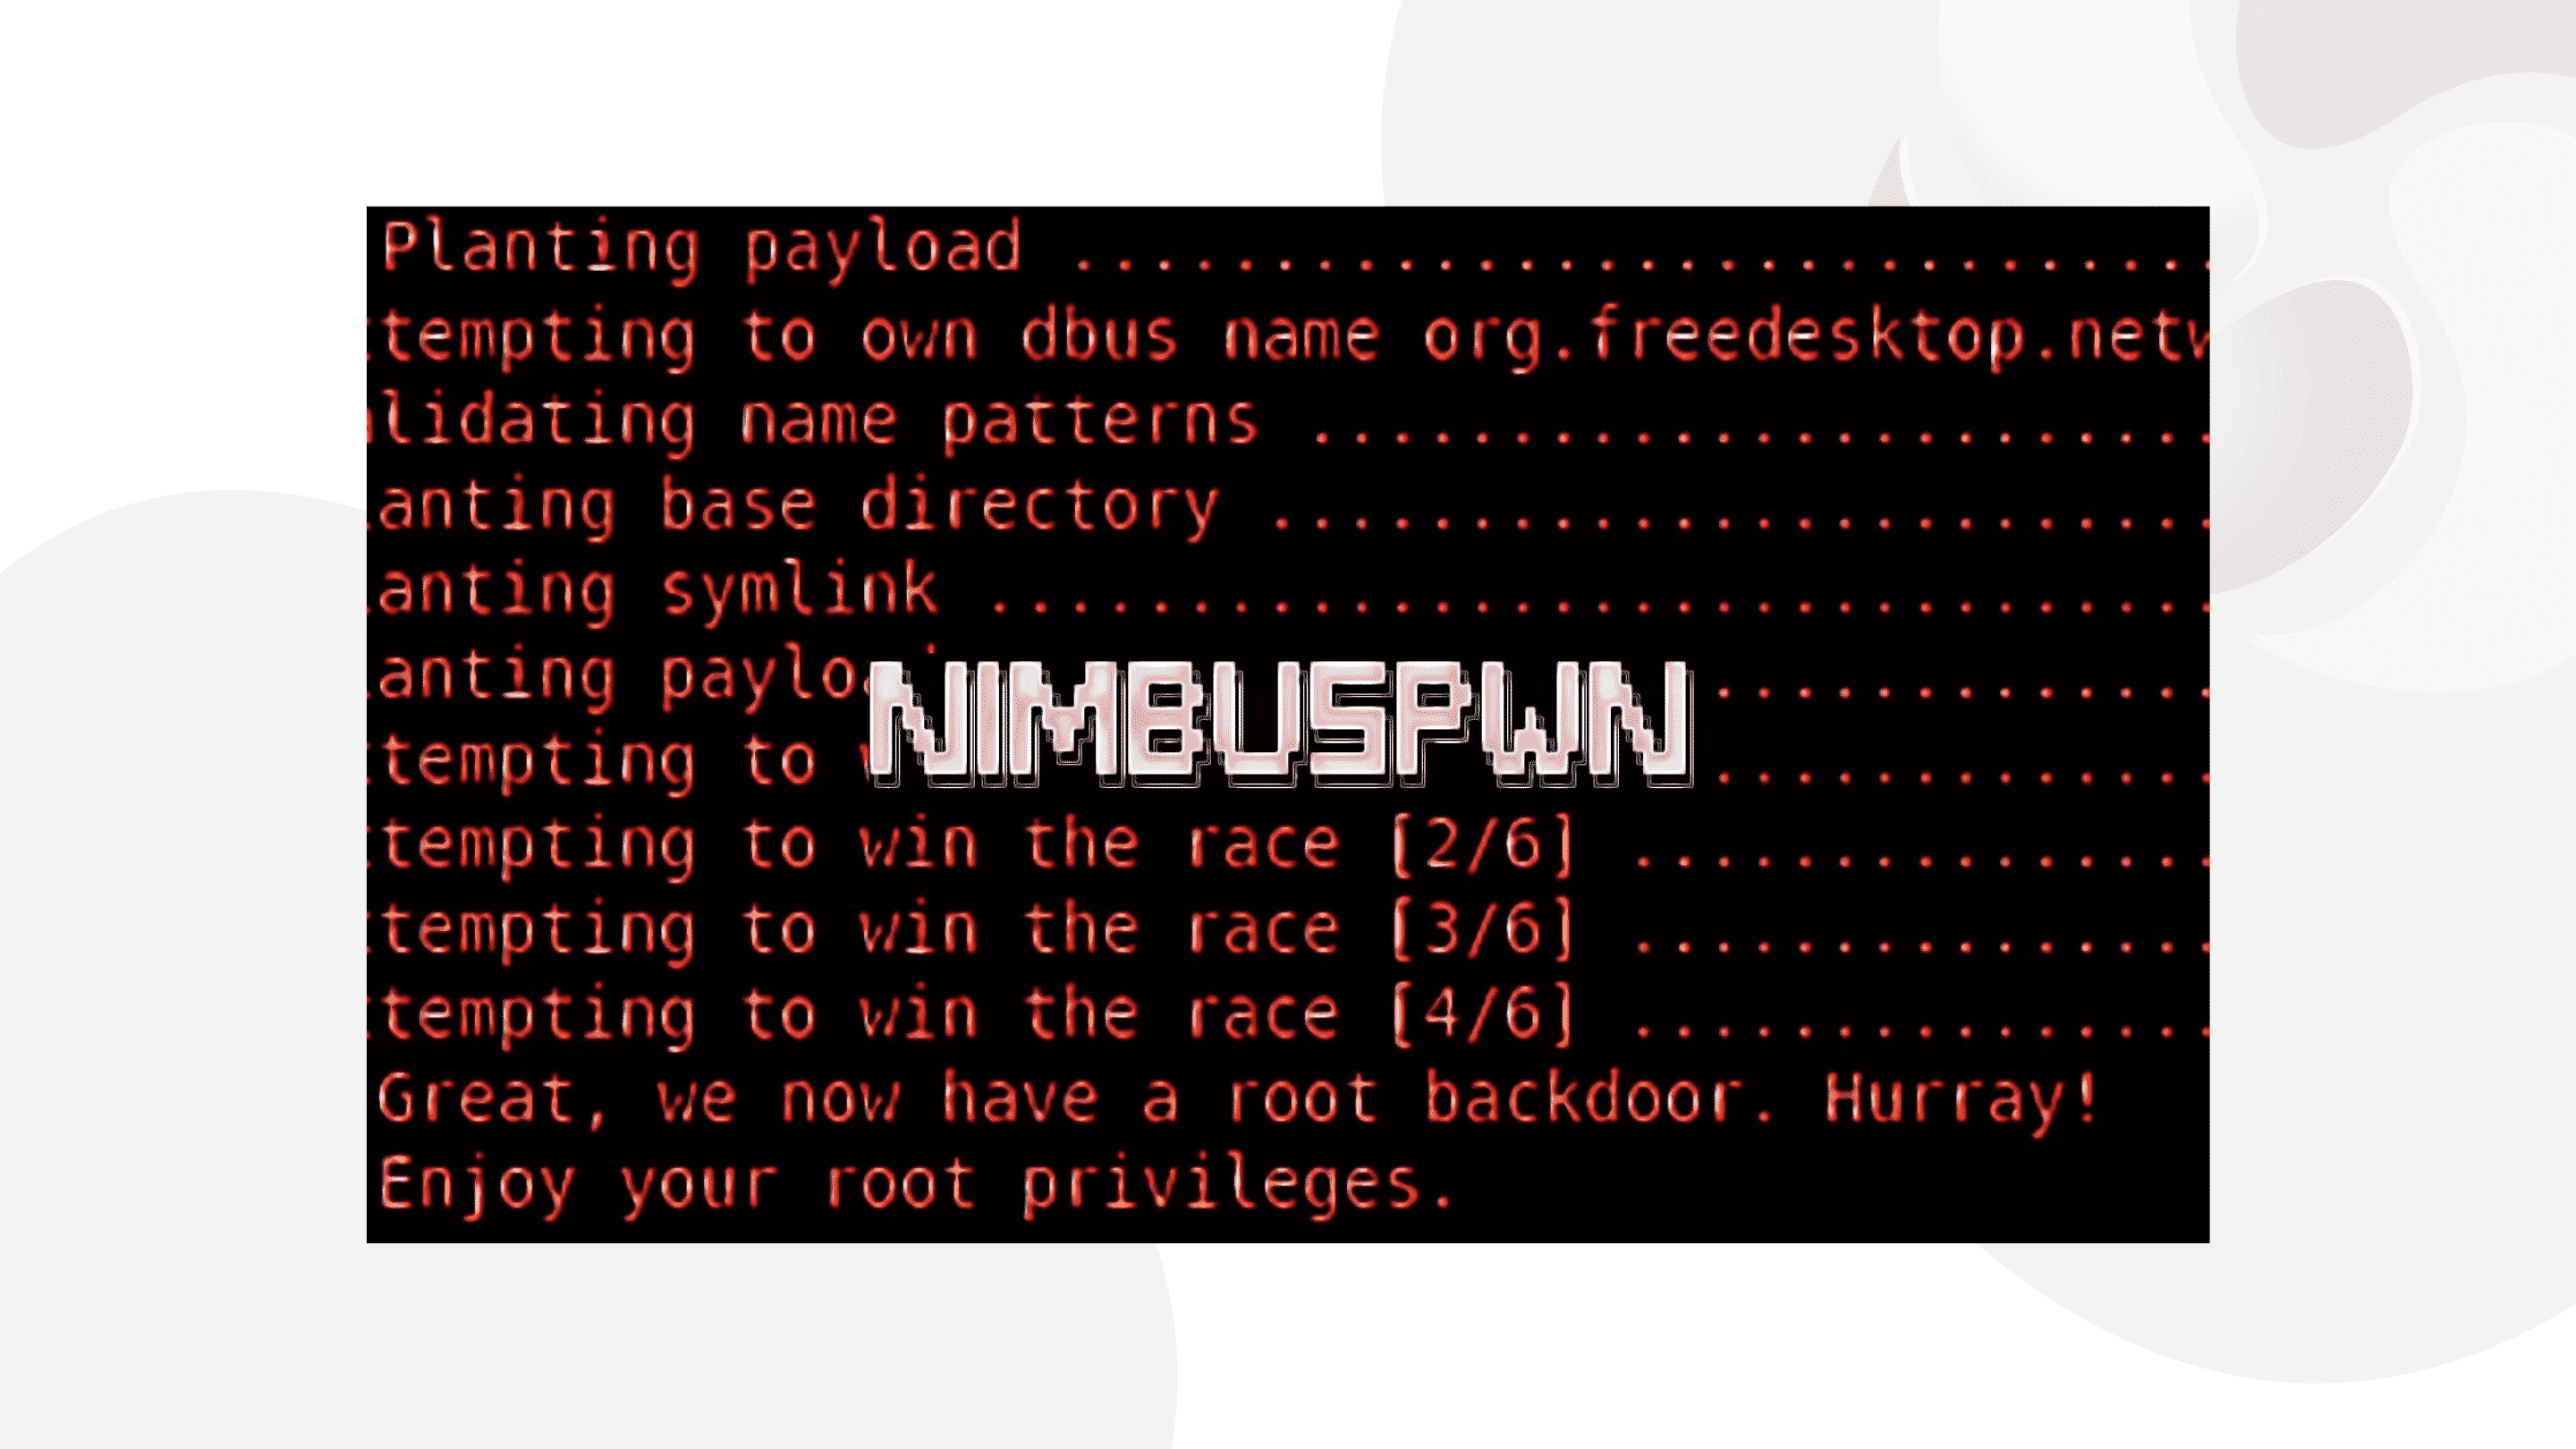 falhas-do-linux-nimbuspwn-podem-permitir-a-realizacao-de-varias-atividades-maliciosas